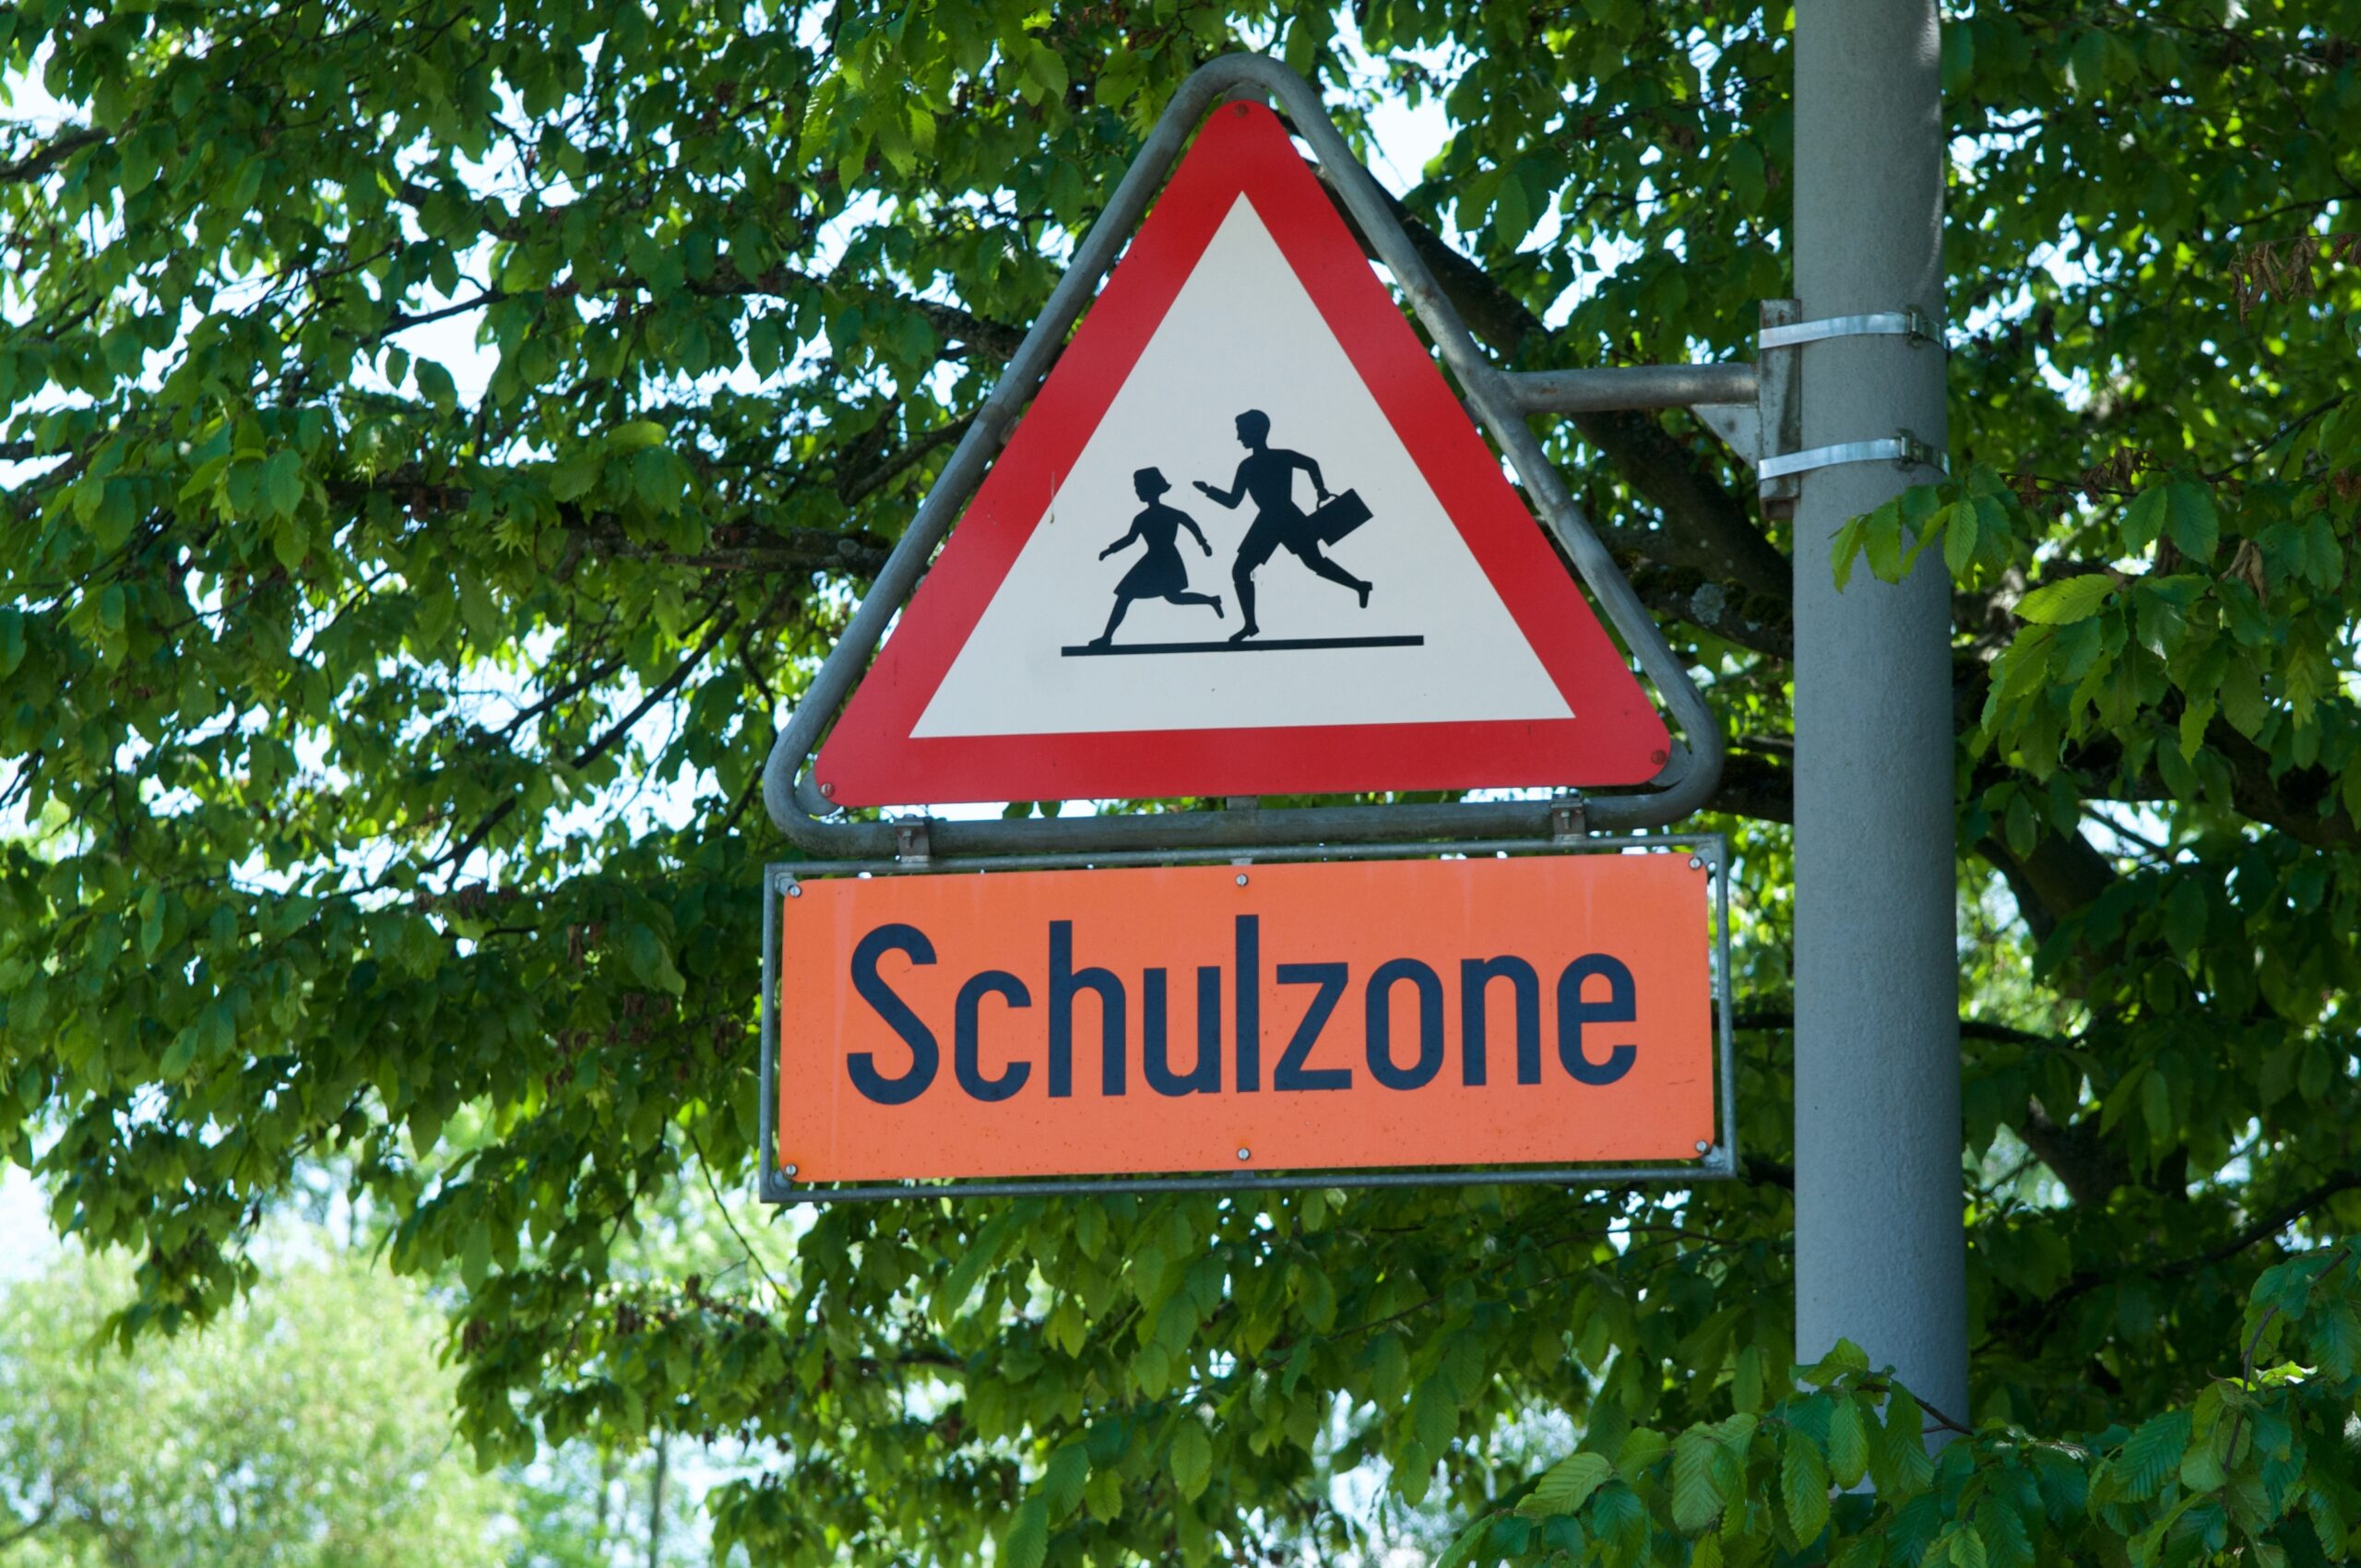 Das Verkehrszeichen 136 Kinder hängt an einer Laterne vor einer Baumkrone, darunter ein oranges Hinweisschild "Schulzone"